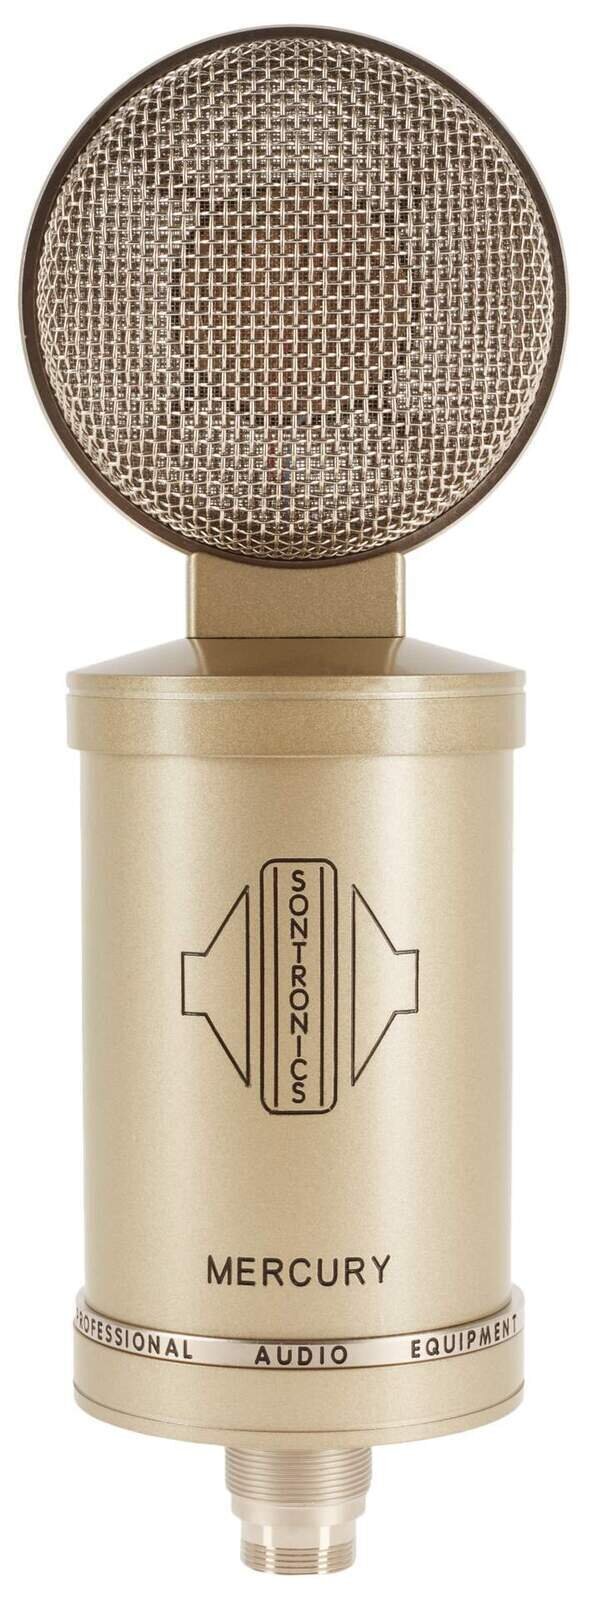 Studio Condenser Microphone Sontronics Mercury Studio Condenser Microphone